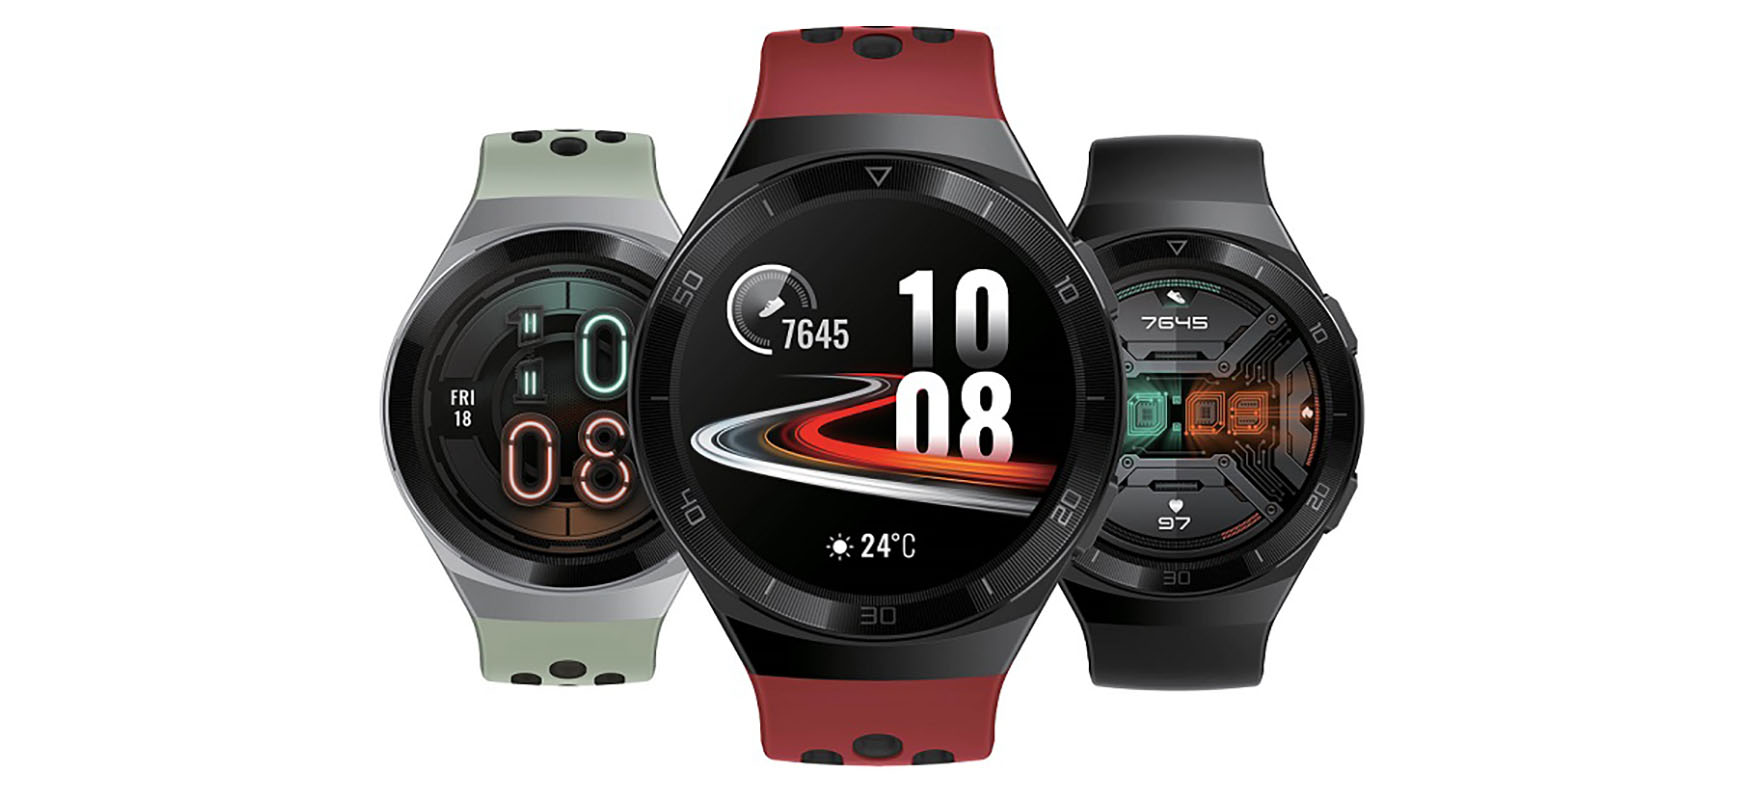 Huawei Watch GT 2e - opis i parametry